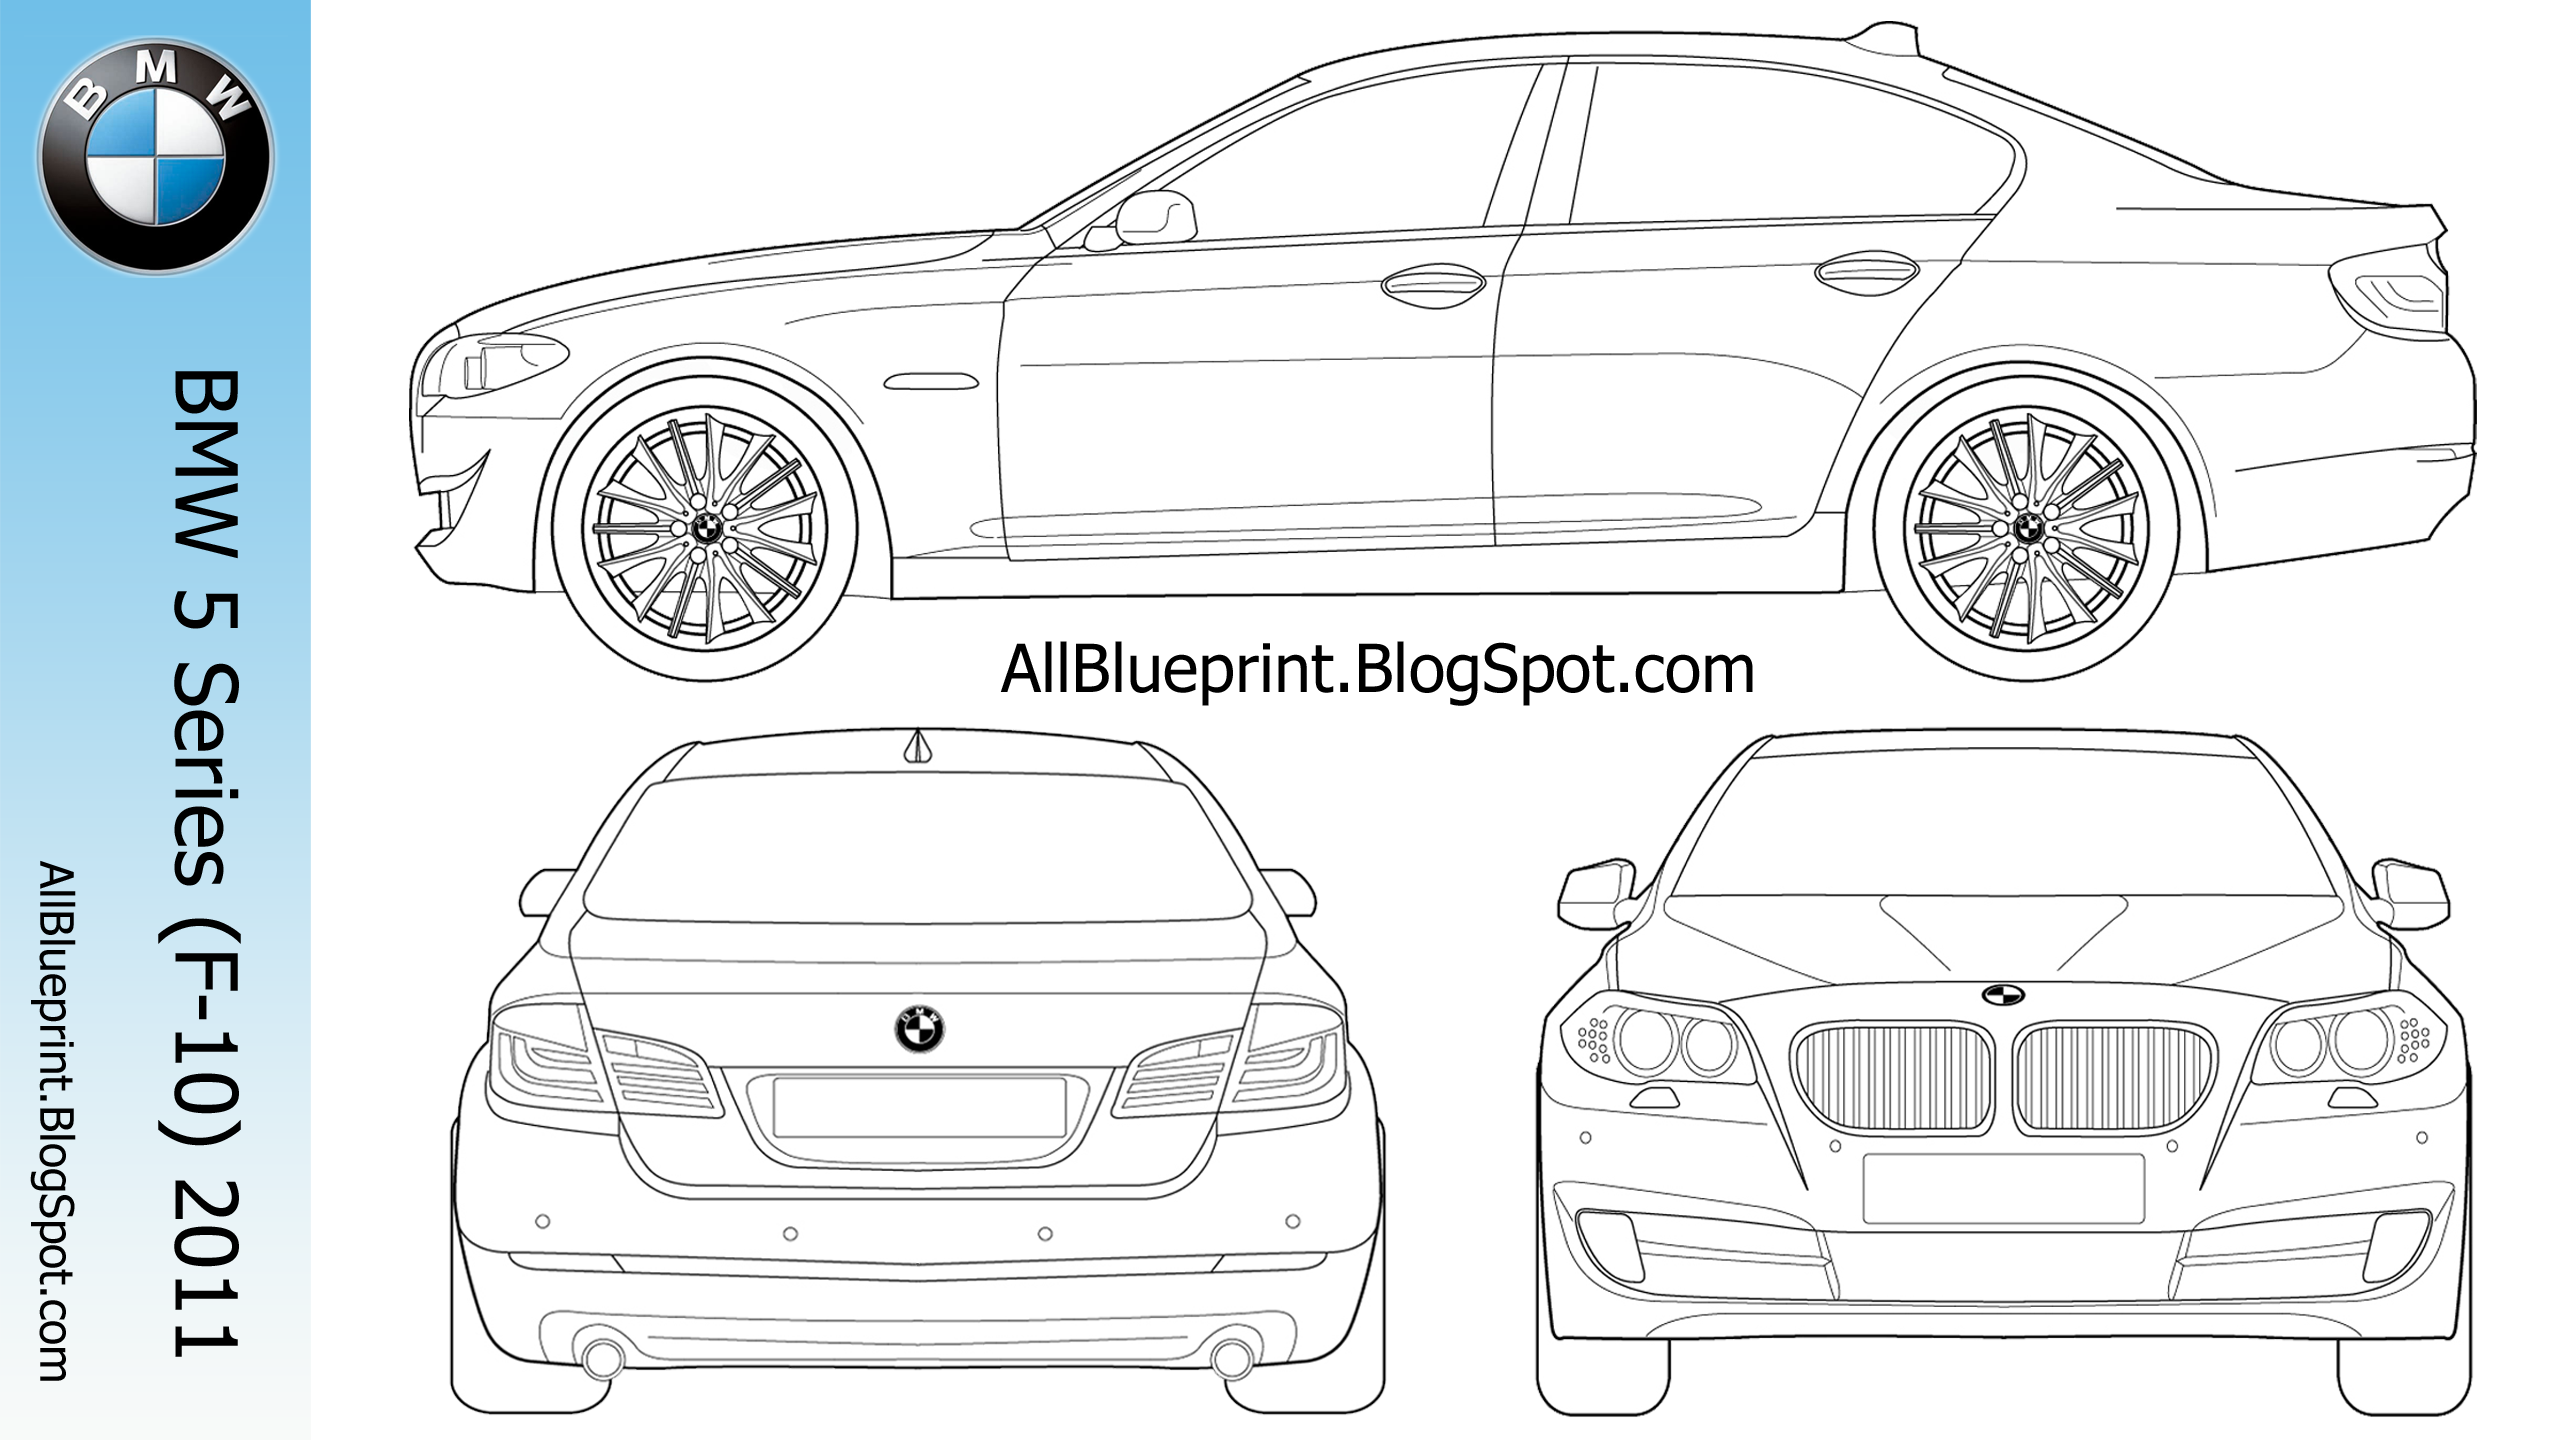 BMW m5 e60 Blueprint. Чертеж BMW m5 f10. BMW e60 чертеж. Чертеж БМВ м5 ф90. Распечатать бмв м5